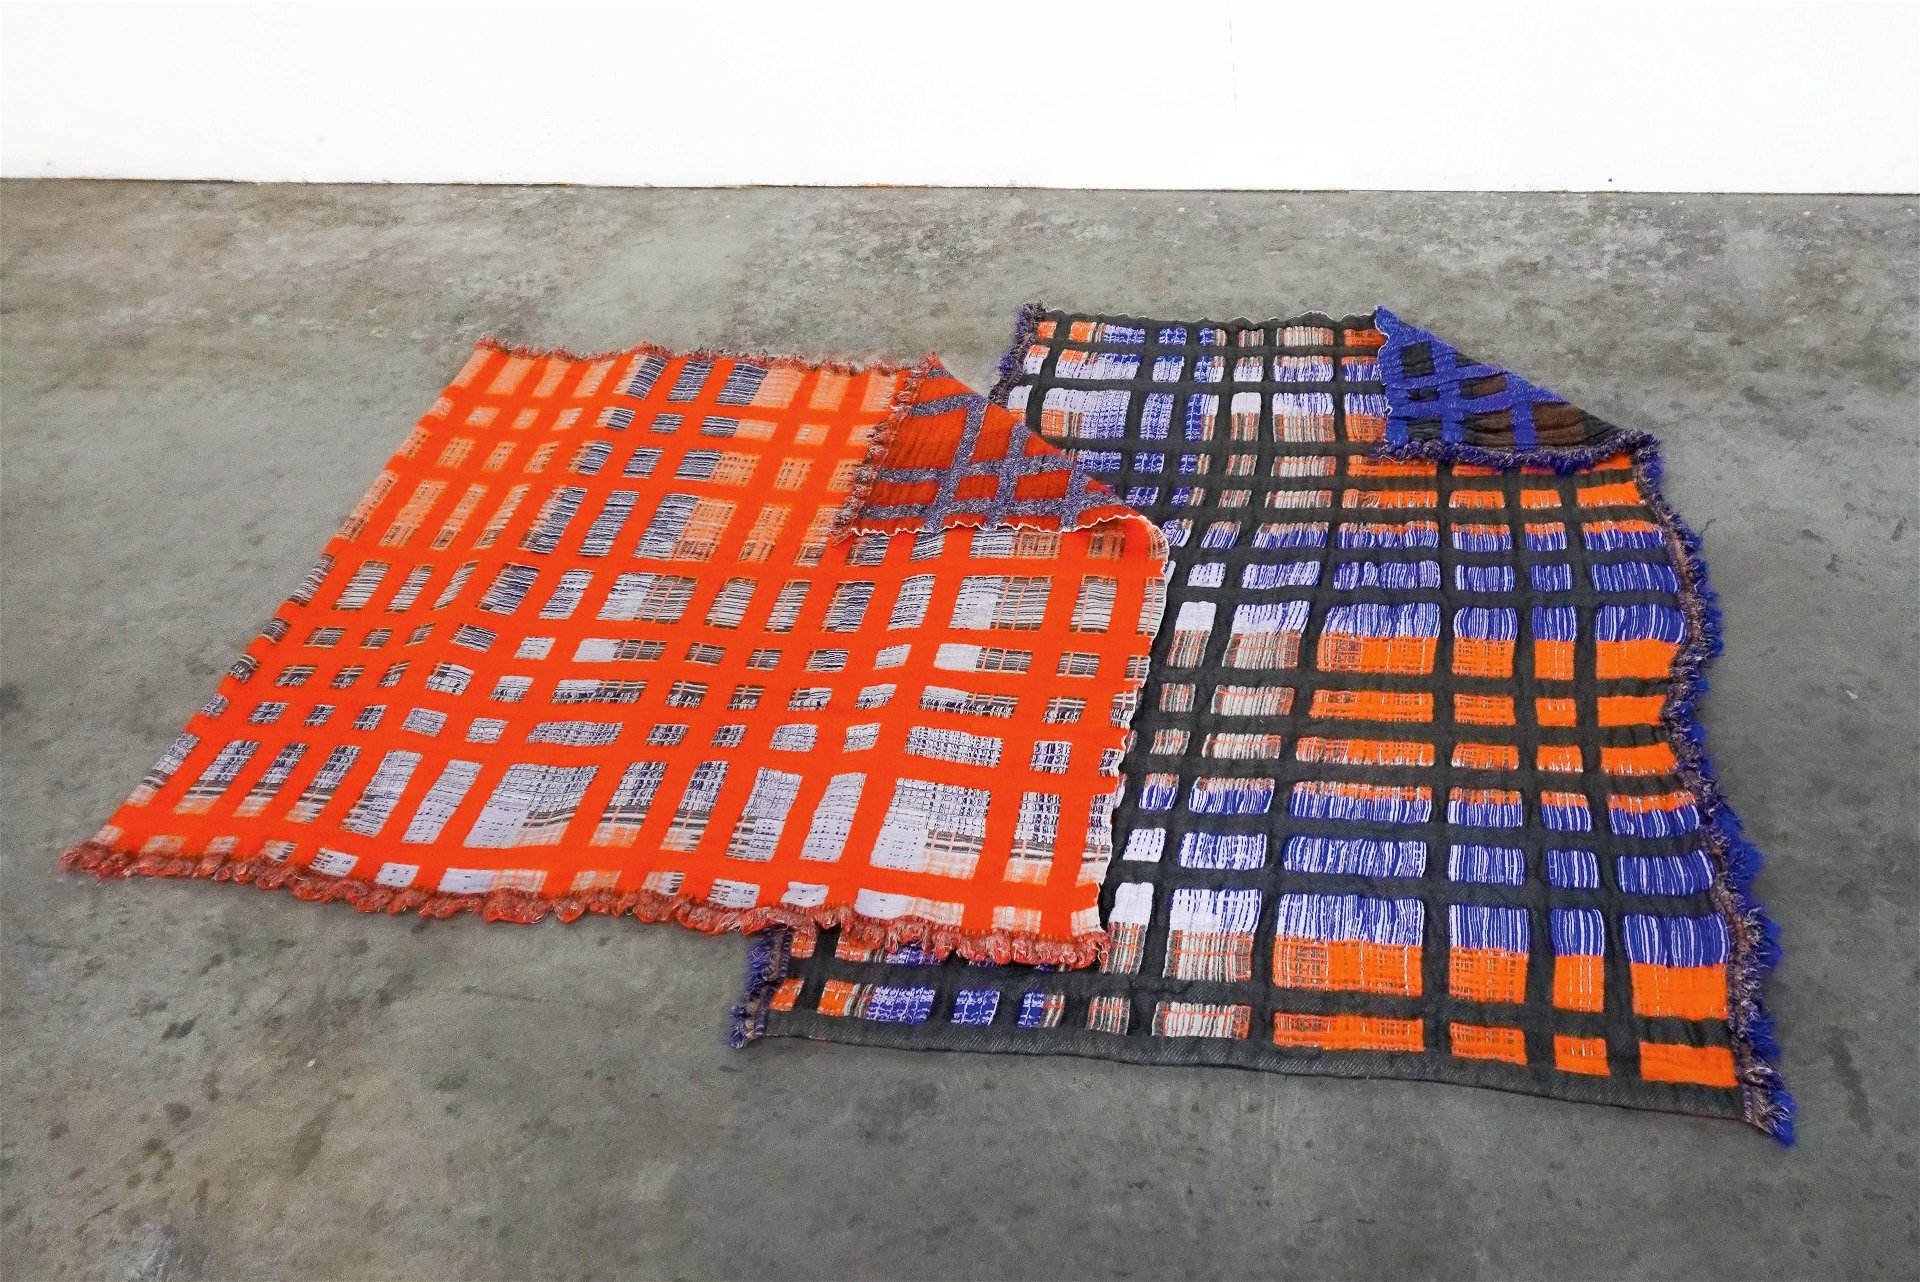 Geometrische Formen.
Starke Farben und grafische Muster im Jacquardstil sind 
typisch für Teppichdesignerin Emma Terweduwe.